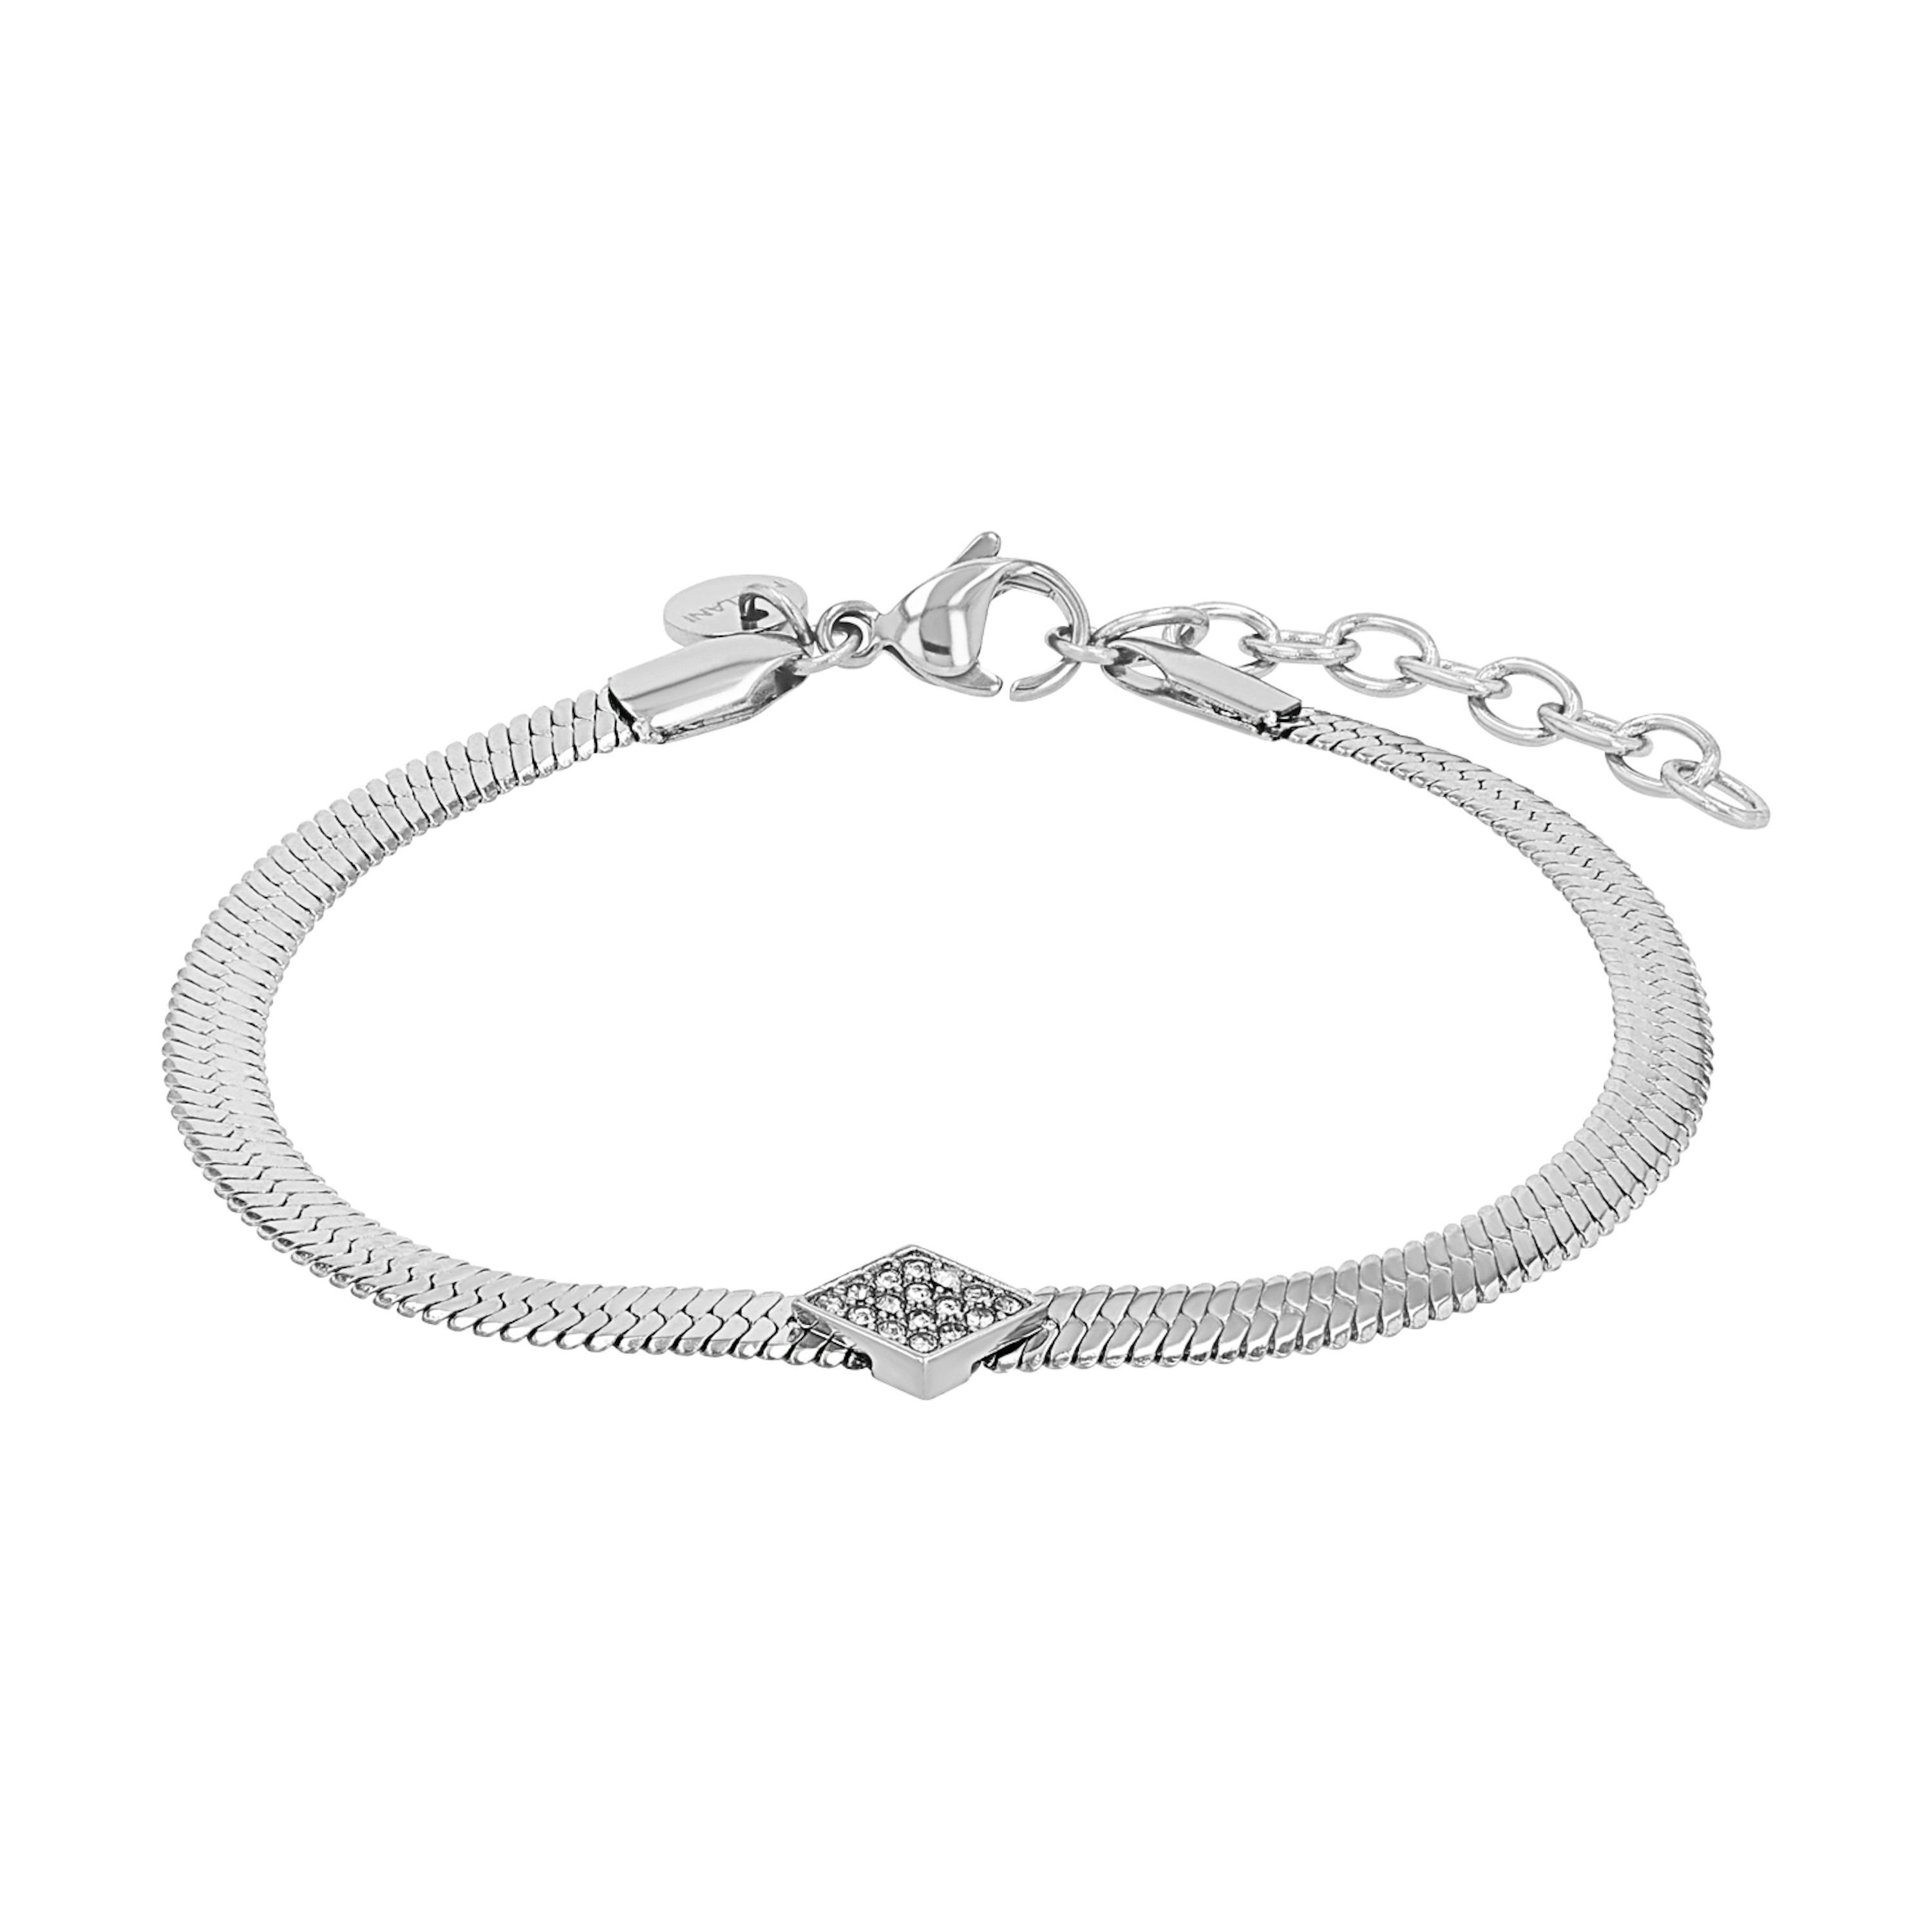 Armbänder Damen – für Damenarmketten|Amor Online Shop